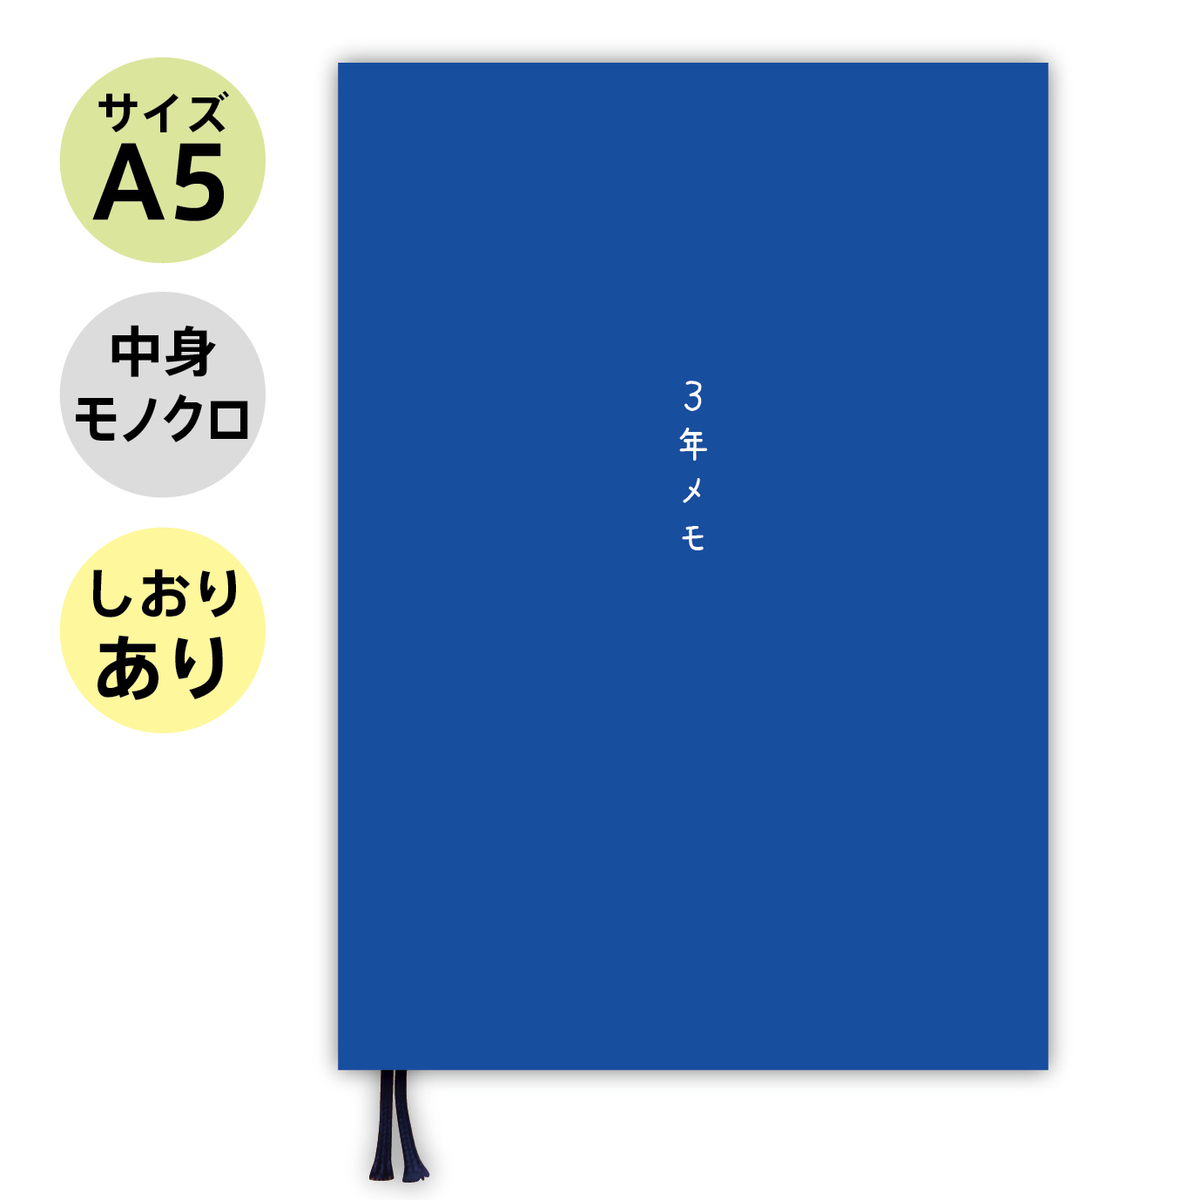  ノートライフ ３年日記 3年メモ 日記帳 A5 (21cm×15cm) 日本製 ソフトカバー 日付け表示あり (いつからでも始められる  青